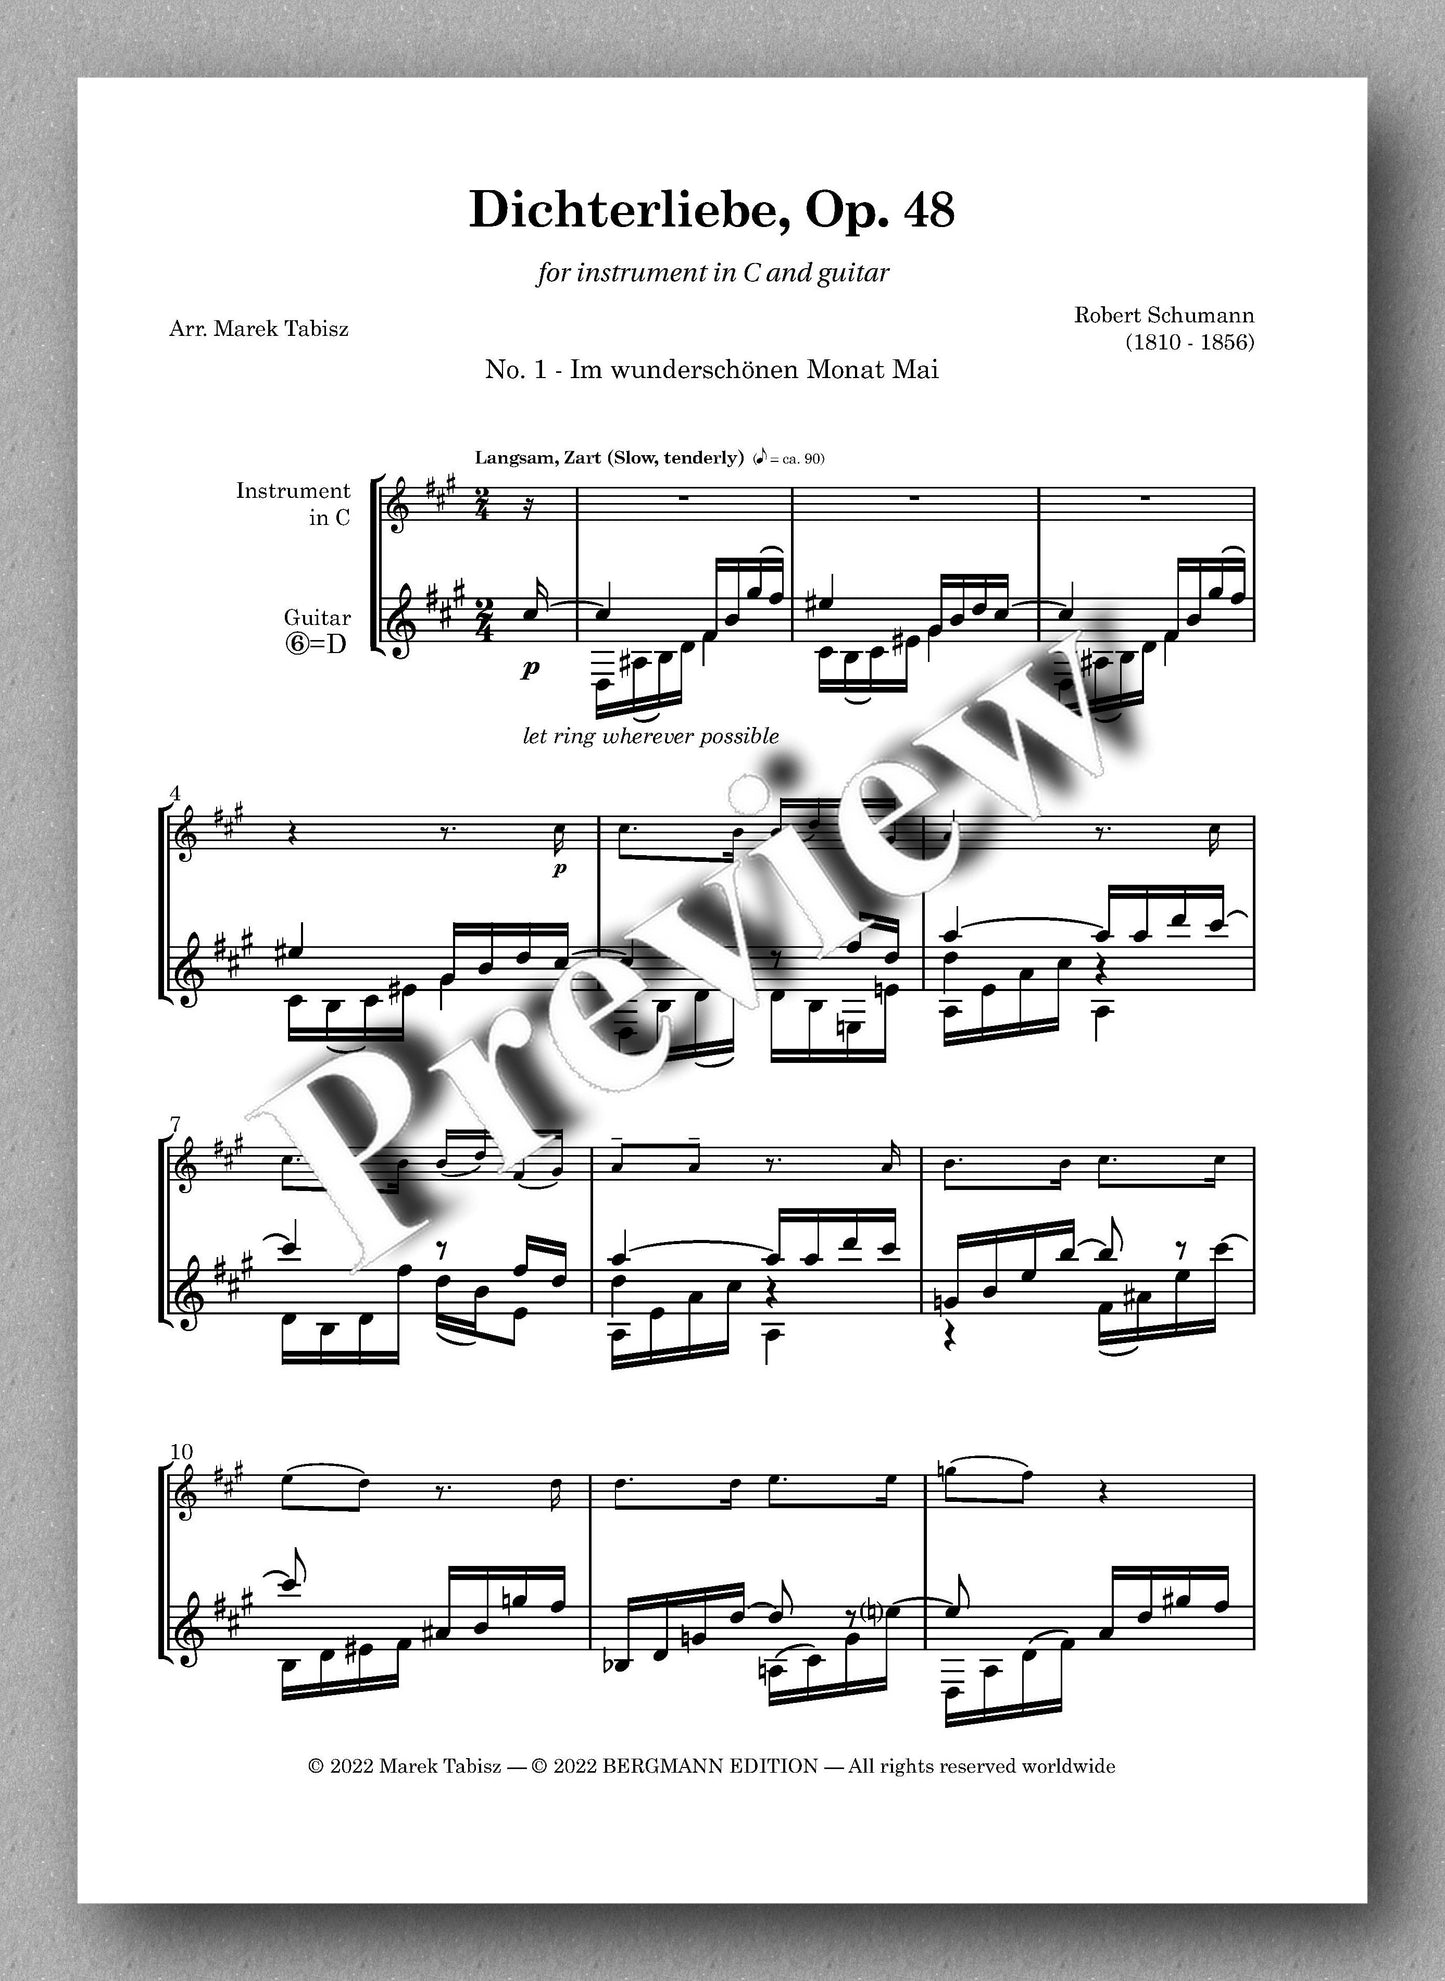 Robert Schumann, Dichterliebe Op. 48 - preview of No. 1 - Im wunderschönen Monat Mai